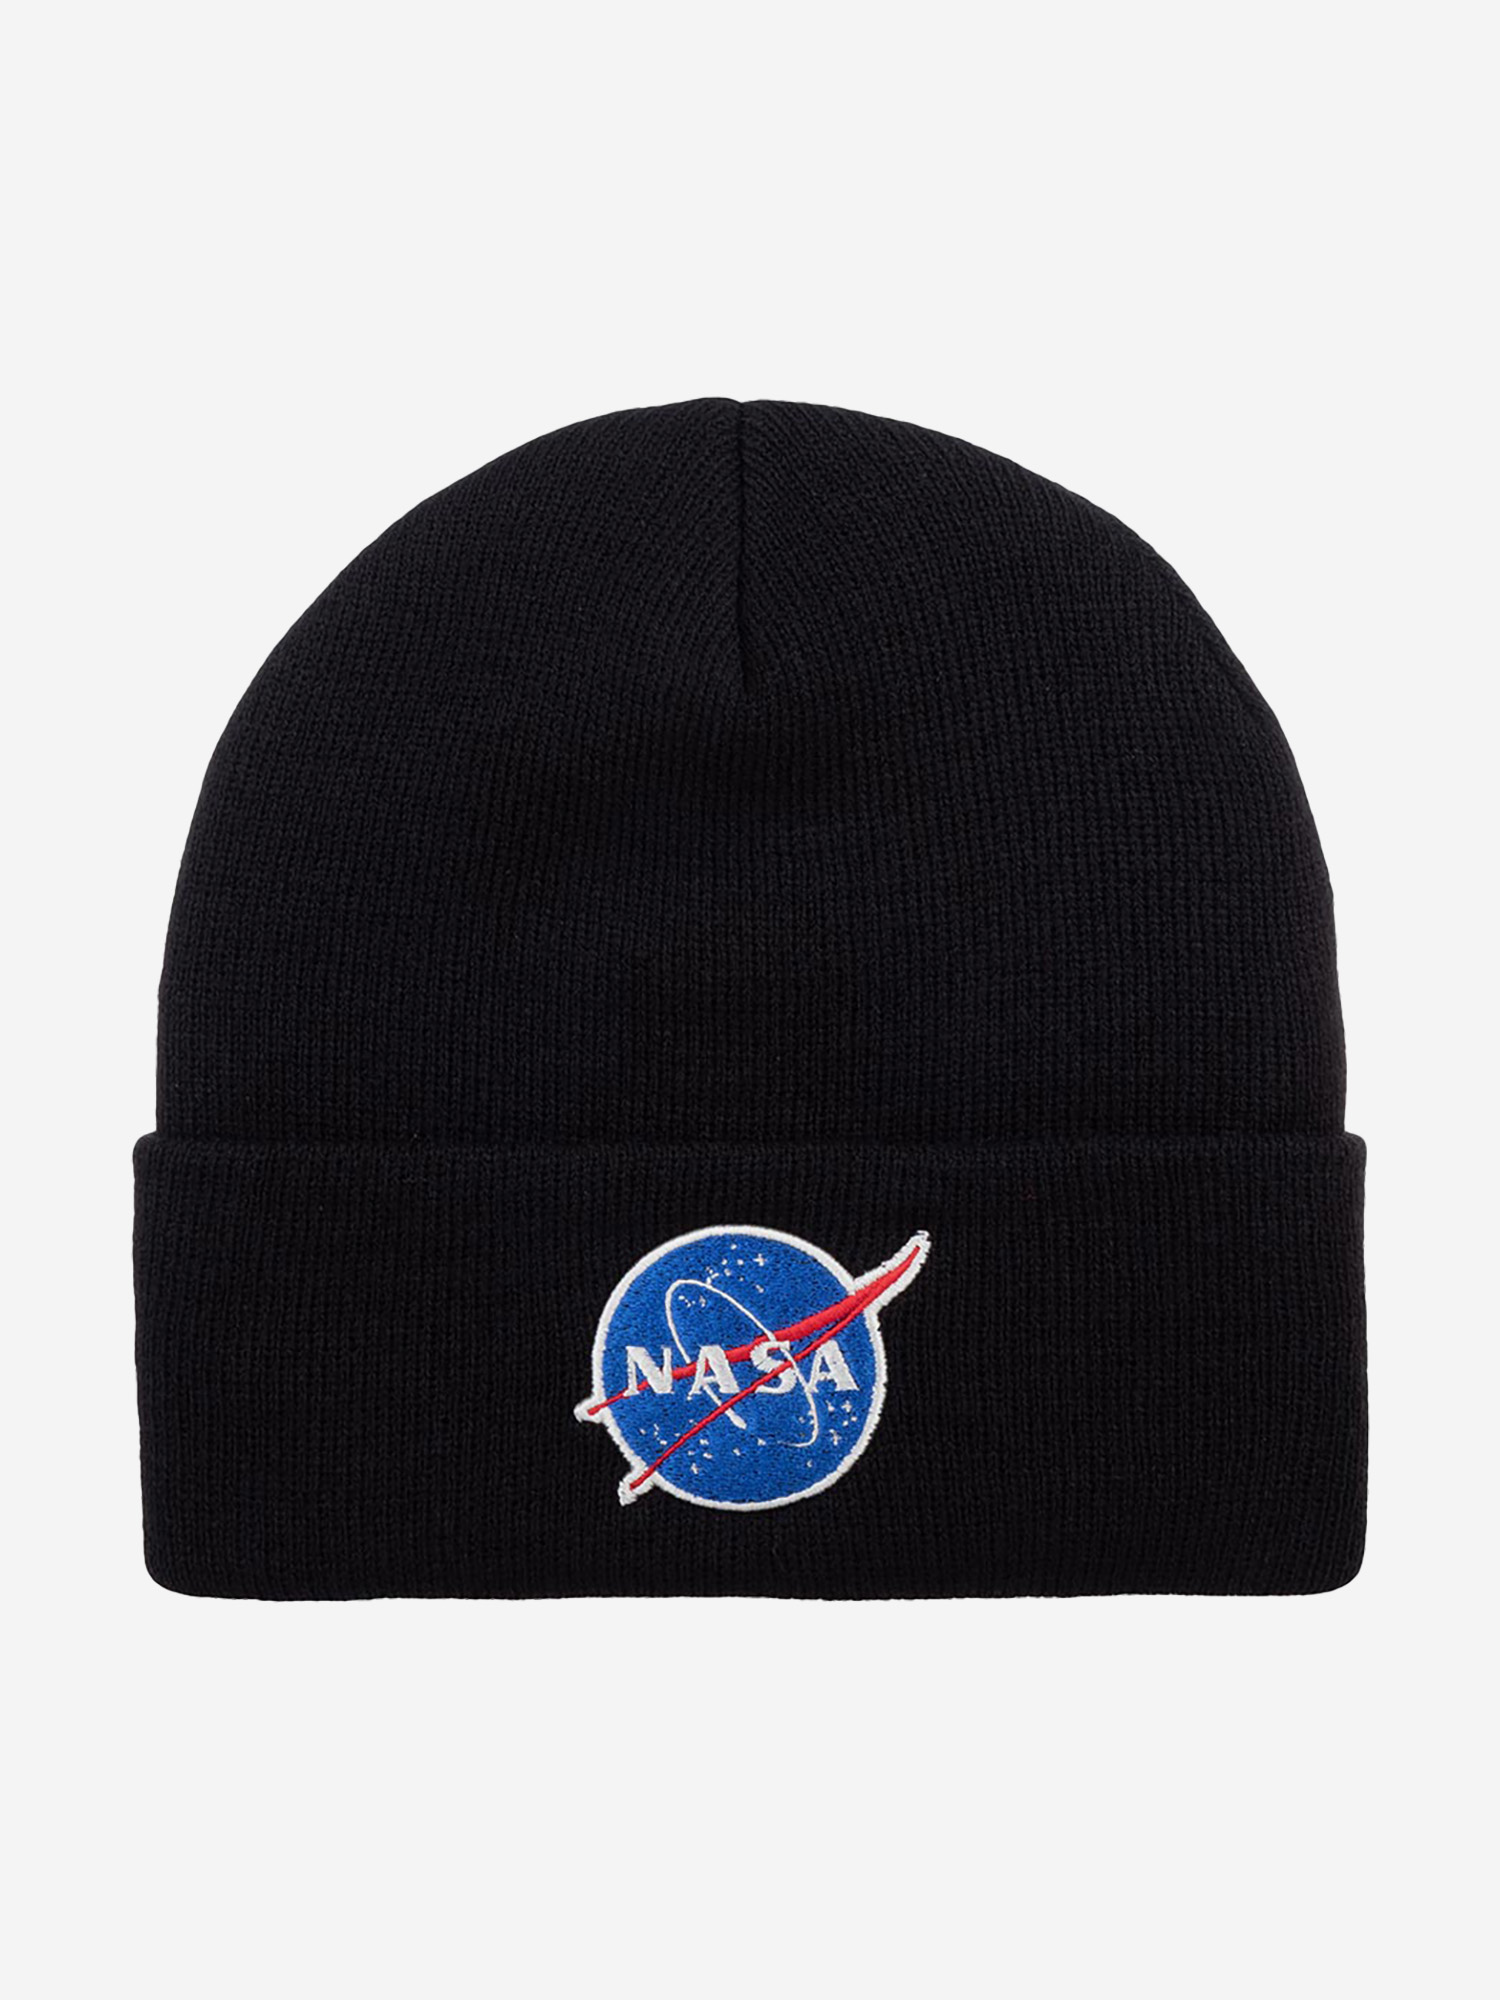 Шапка с отворотом AMERICAN NEEDLE 21019A-NASA NASA Cuffed Knit (черный), Черный